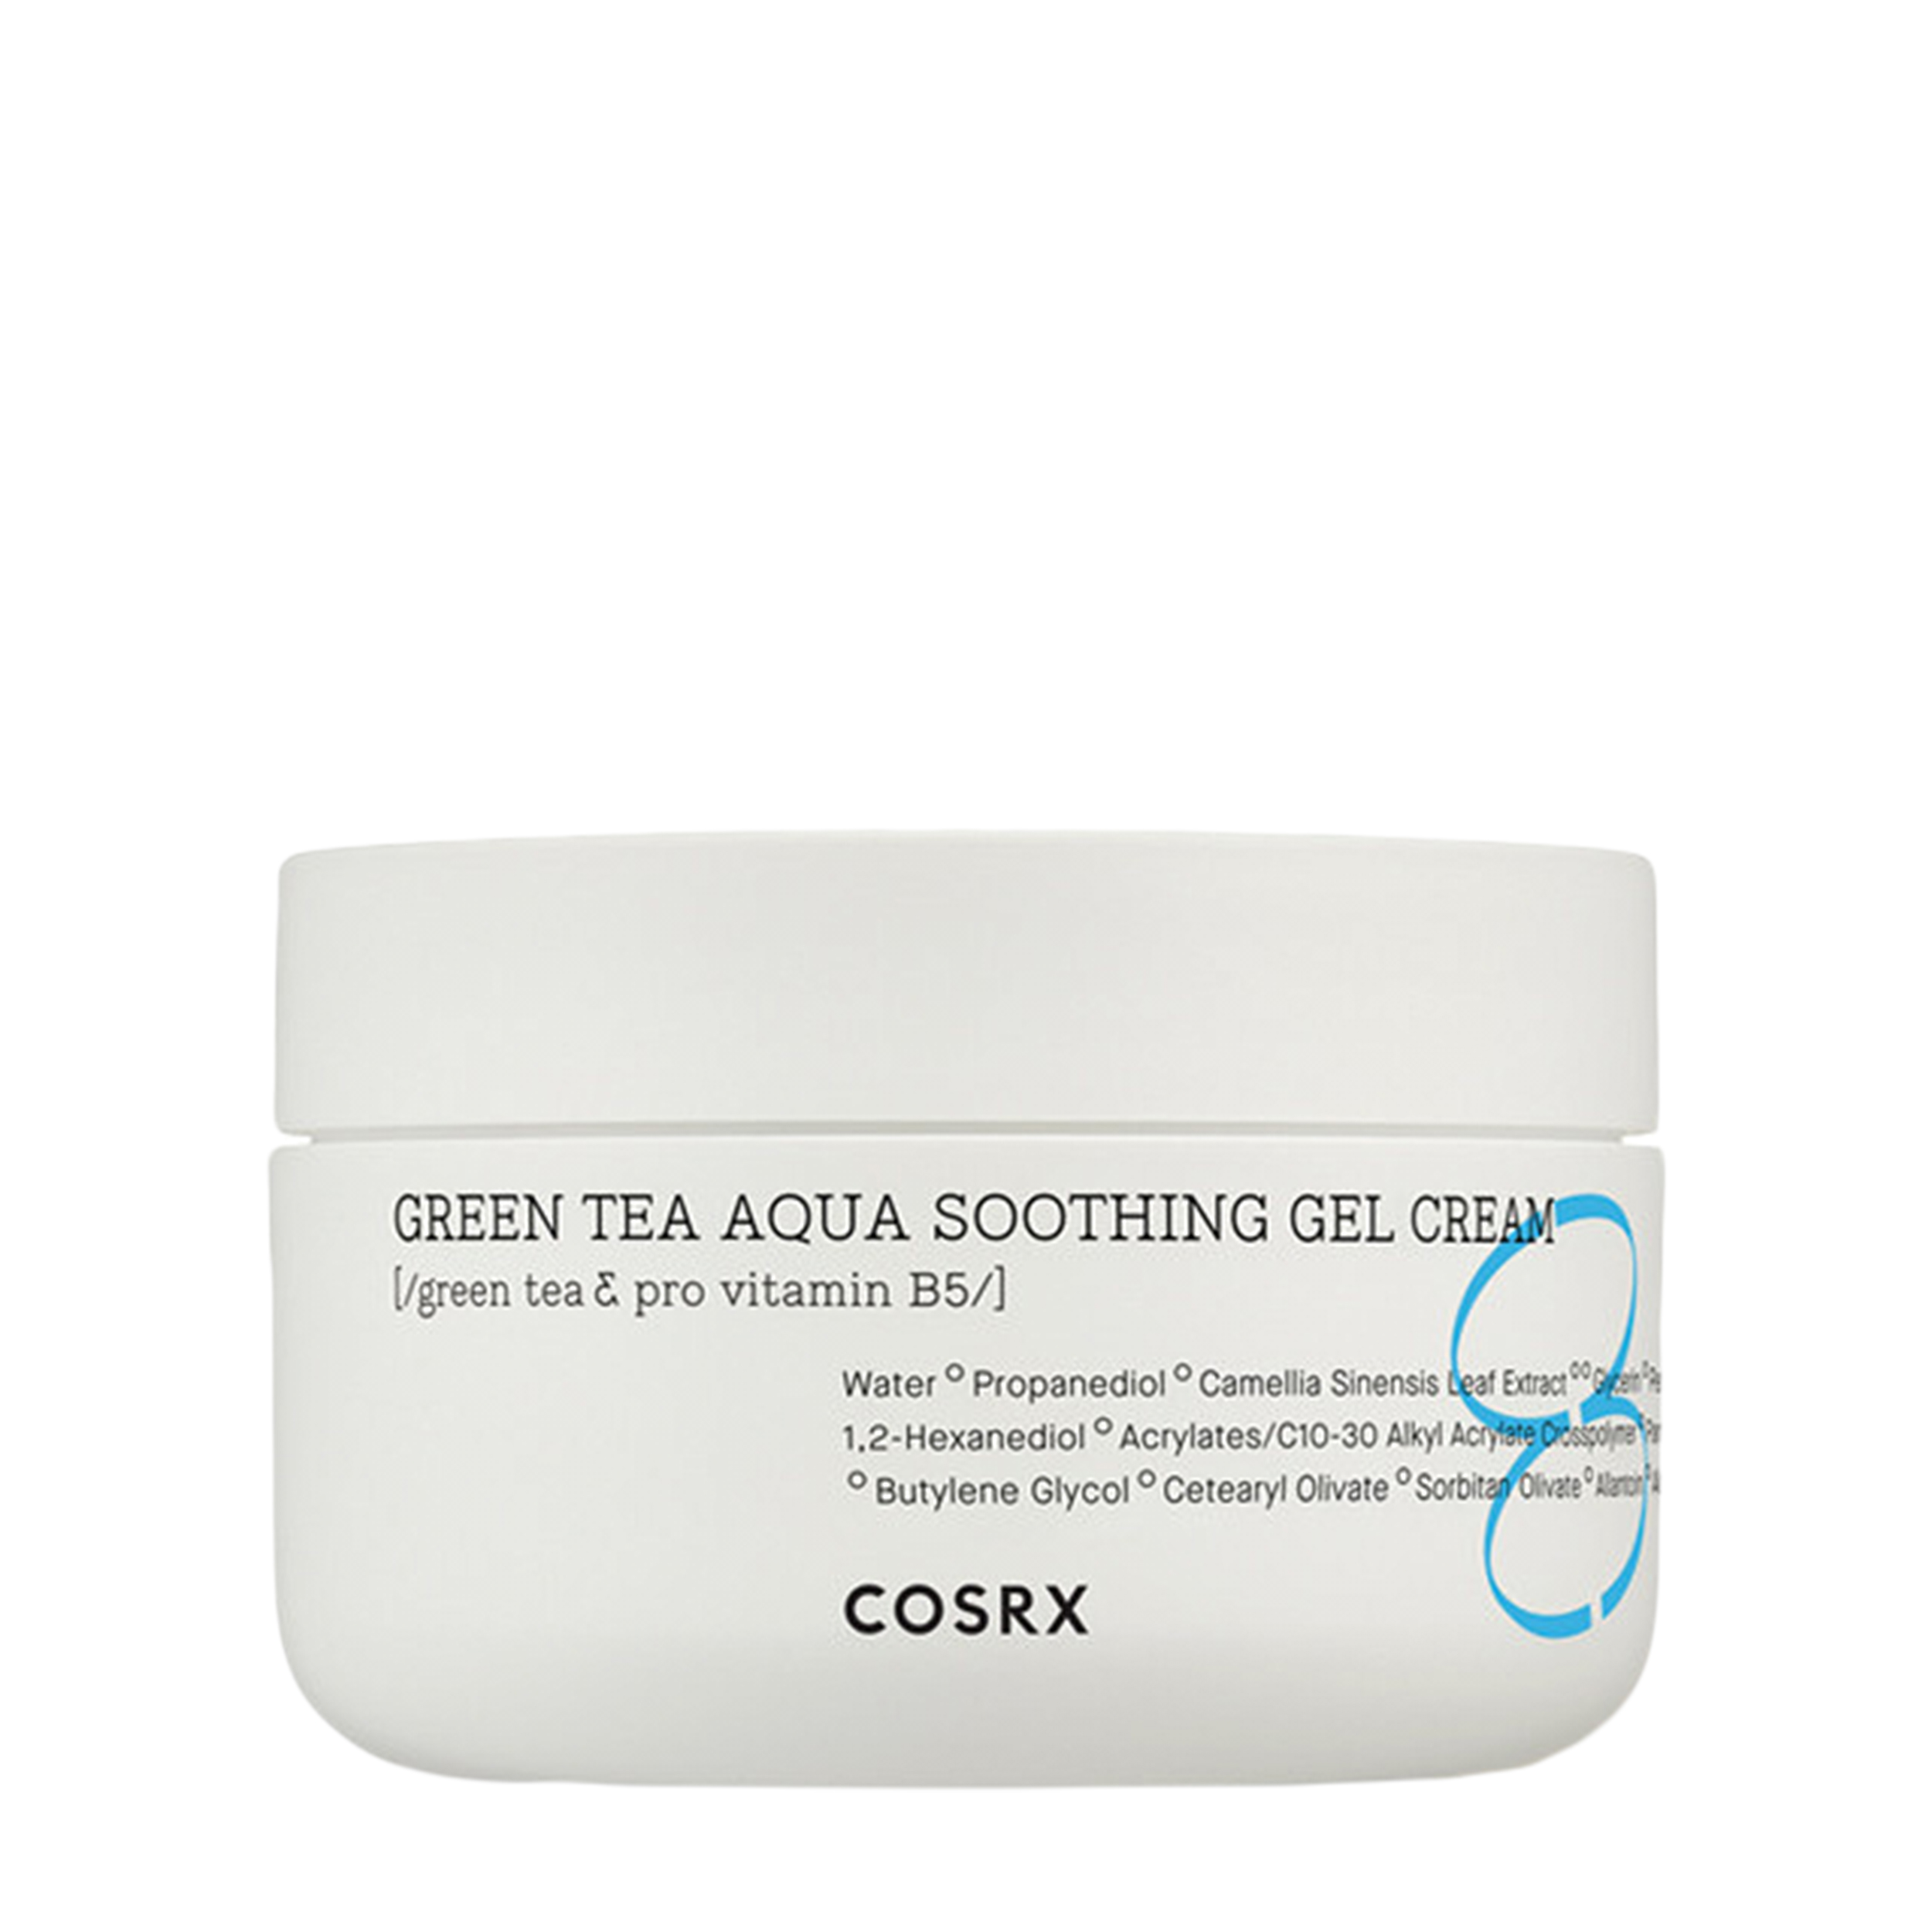 COSRX COSRX Увлажняющий гель-крем для жирной кожи лица Hydrium Green Tea Aqua Soothing Gel Cream 100 мл